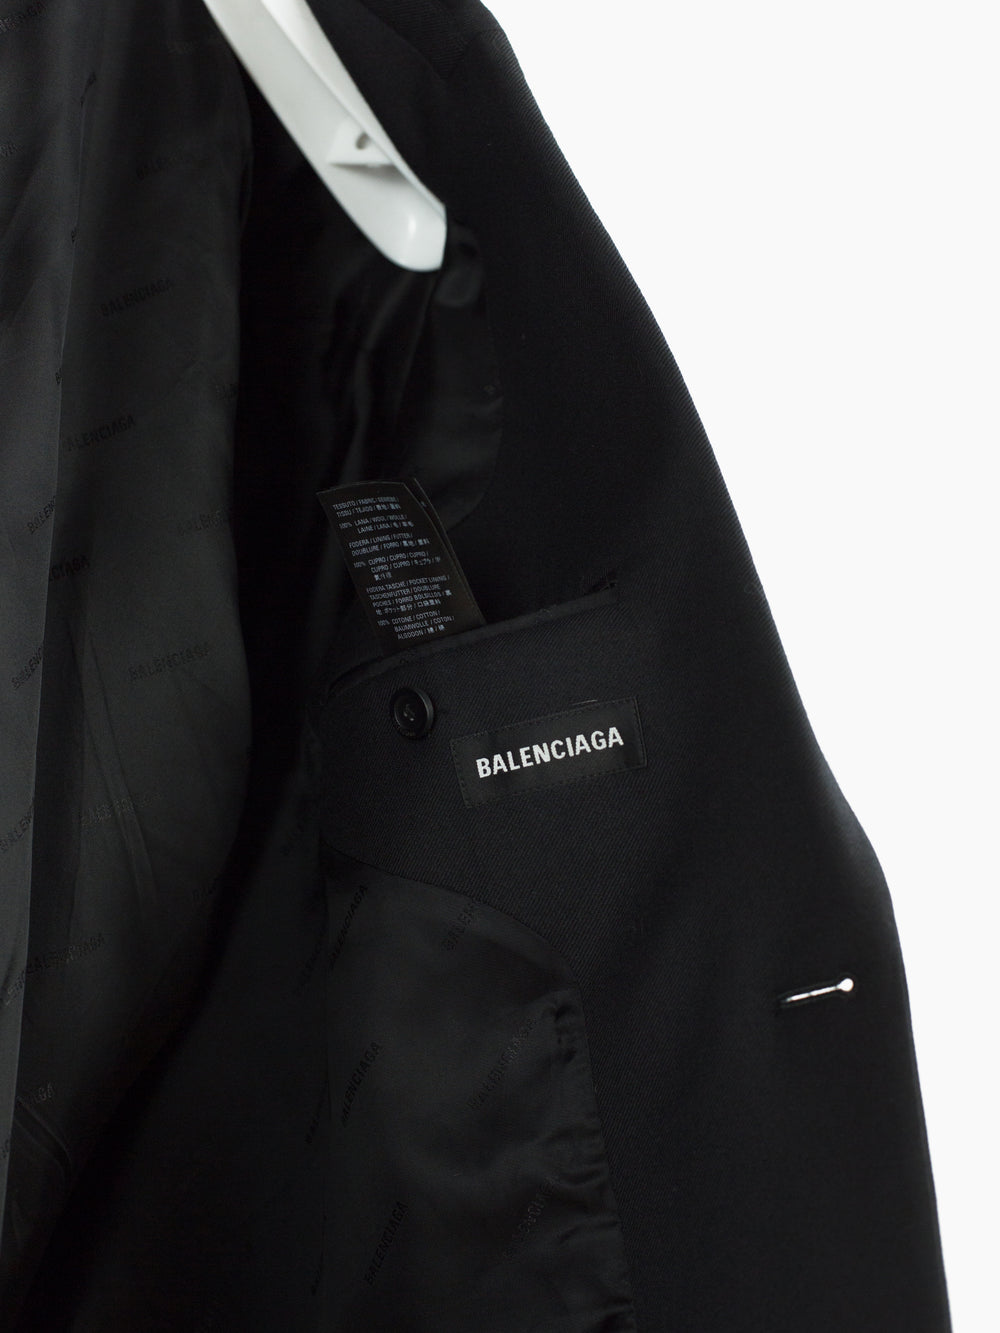 Balenciaga SS20 Seamless Blazer